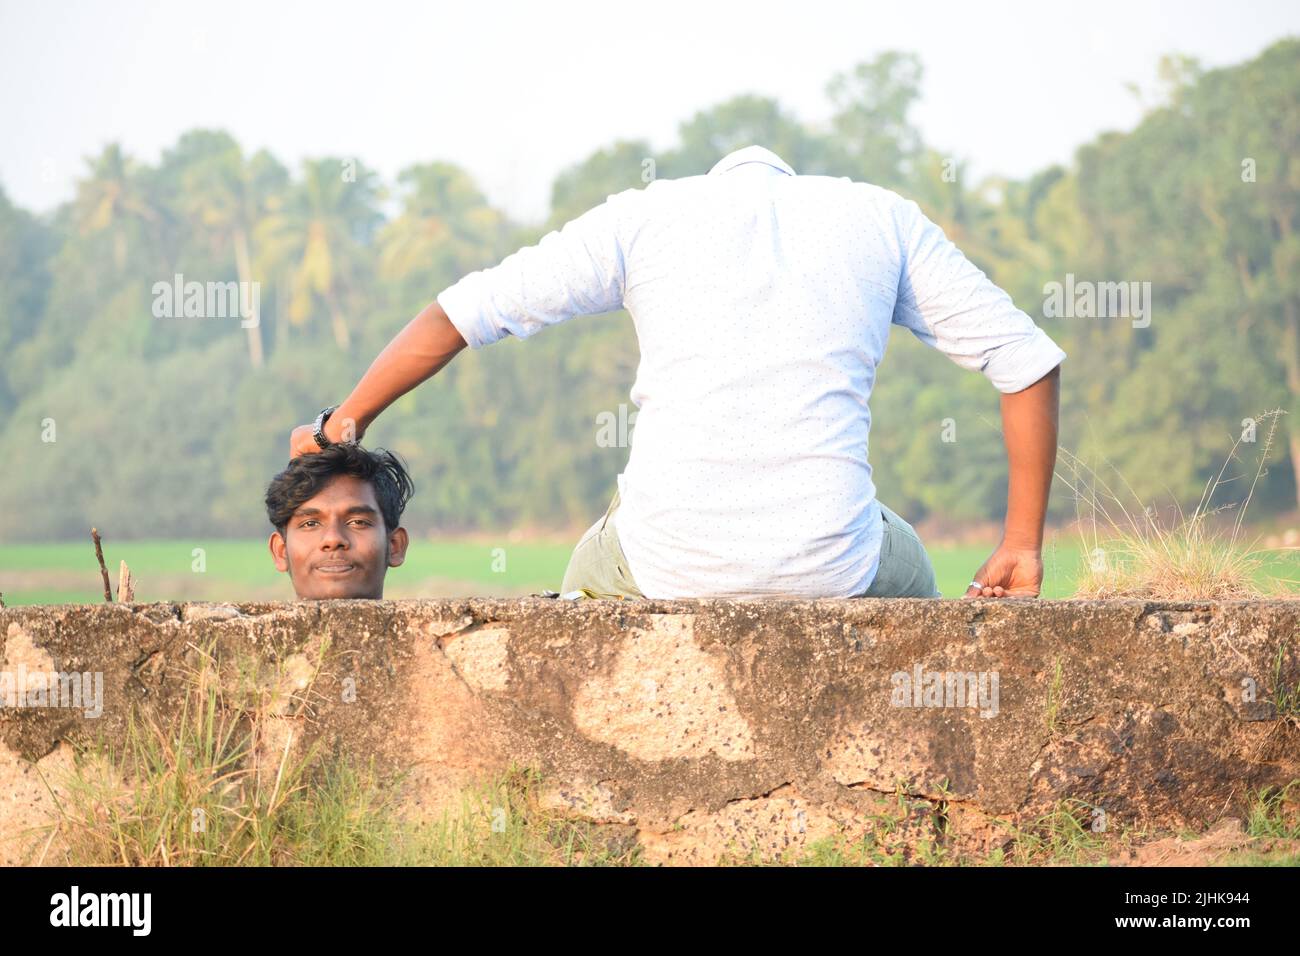 Zwei junge Männer posieren auf kreative Weise für Fotos. Konzept – kreative Fotografie Stockfoto